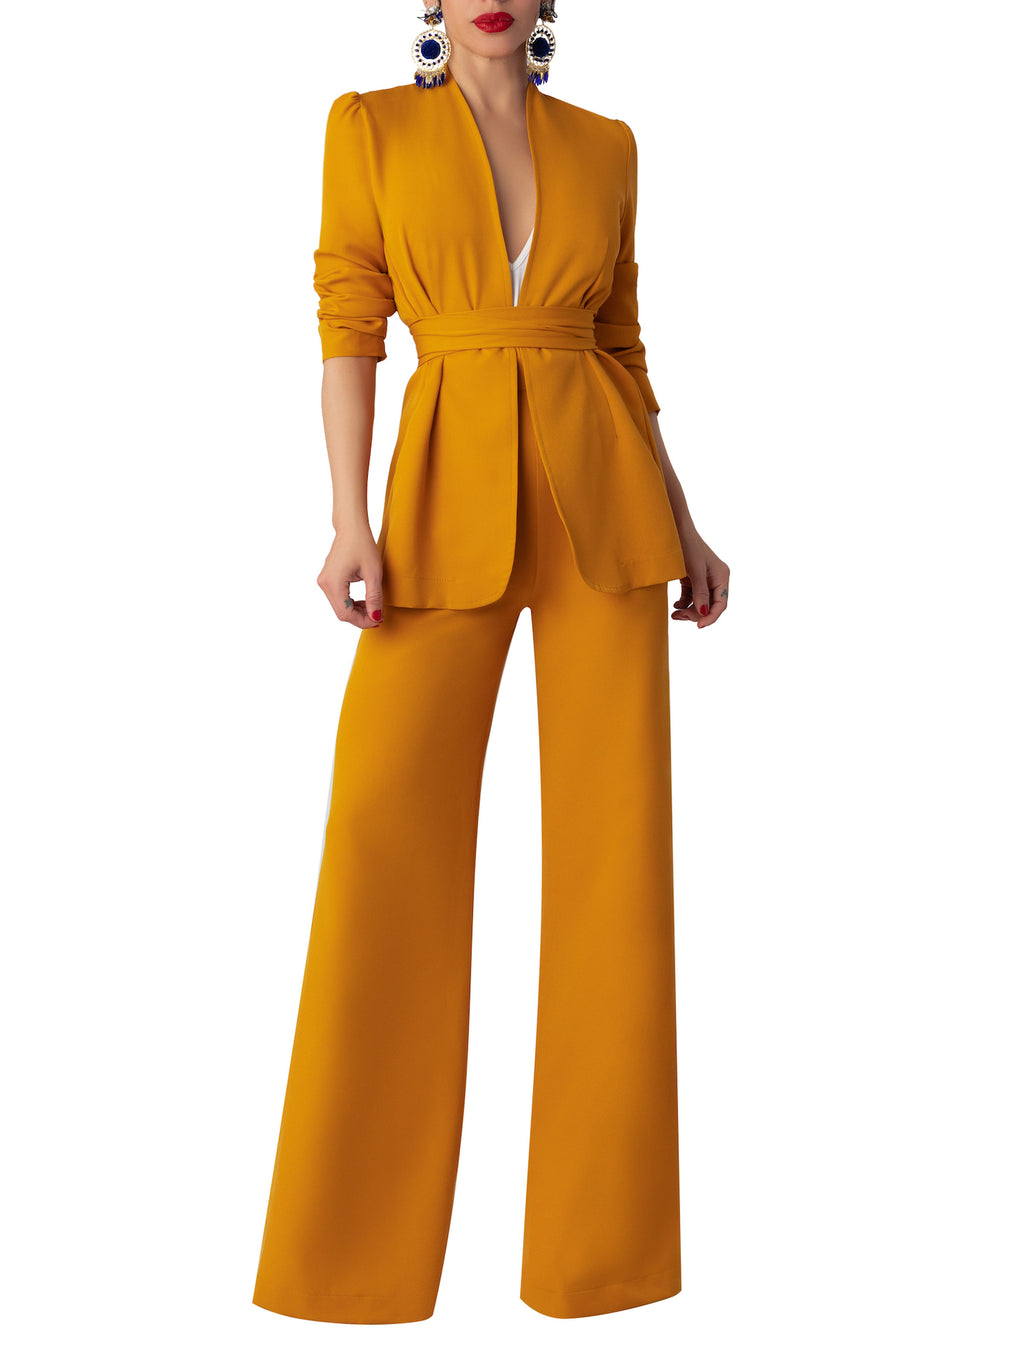 Zara Red Blazer & Trouser Set Size S – Joyce's Closet